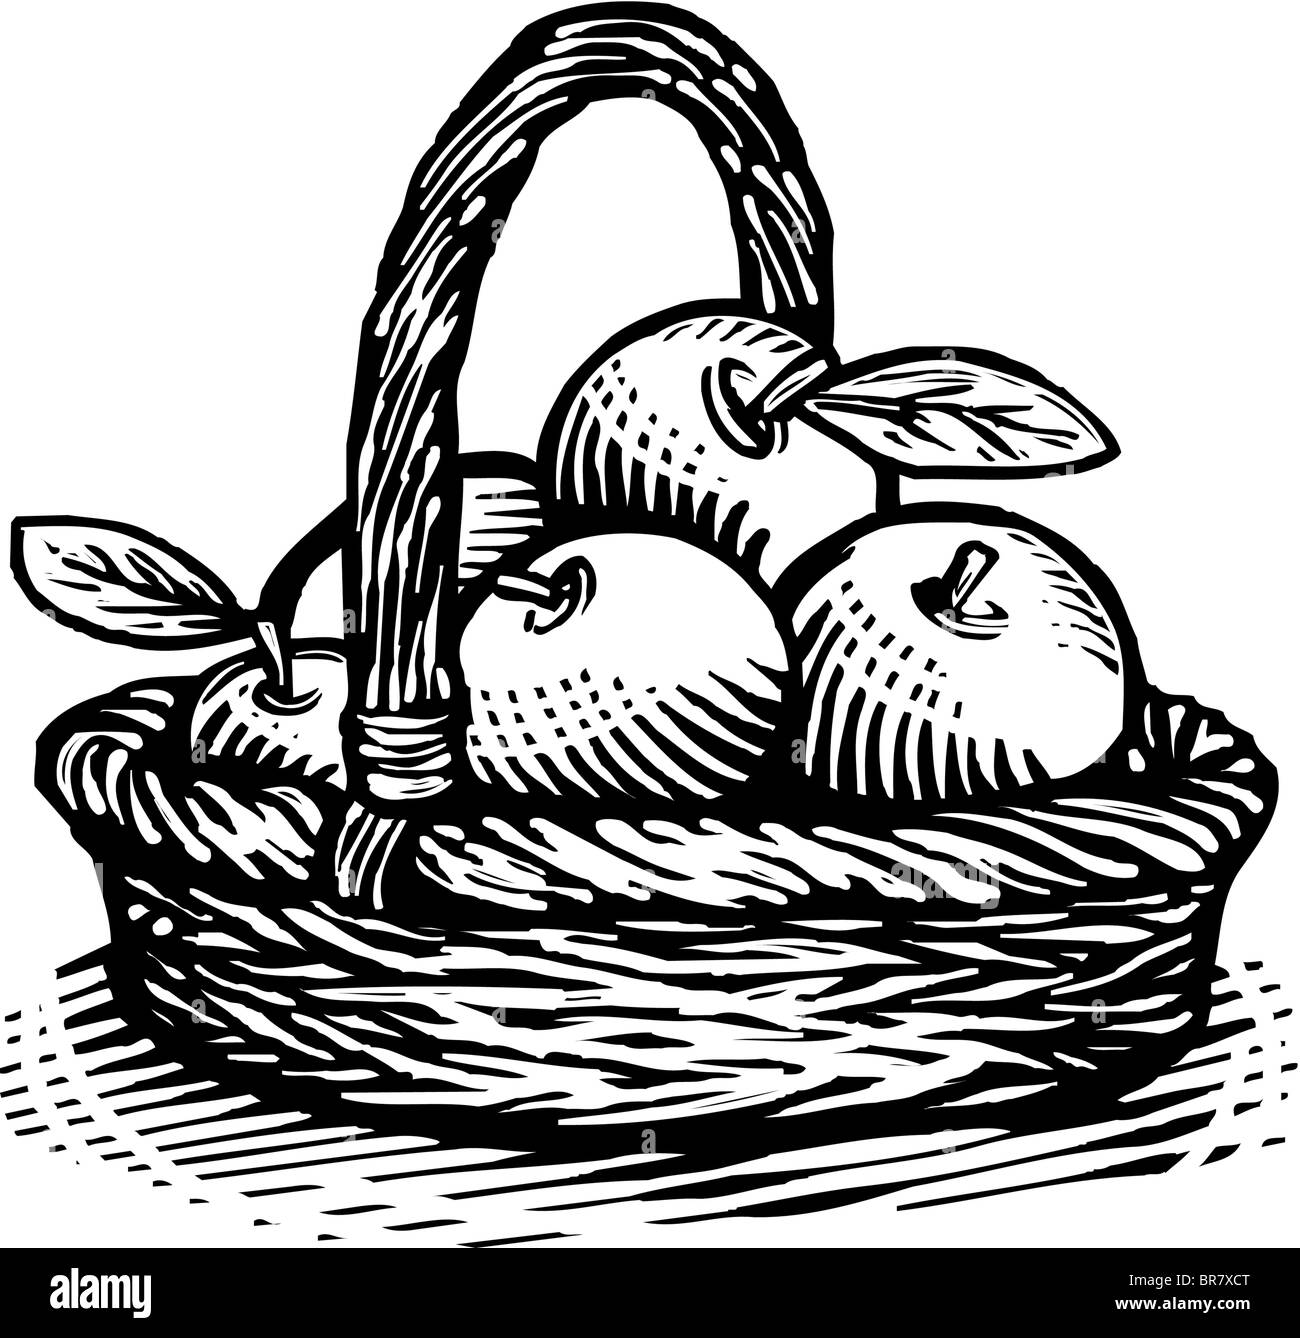 Disegno di un mele in bianco e nero Foto stock - Alamy